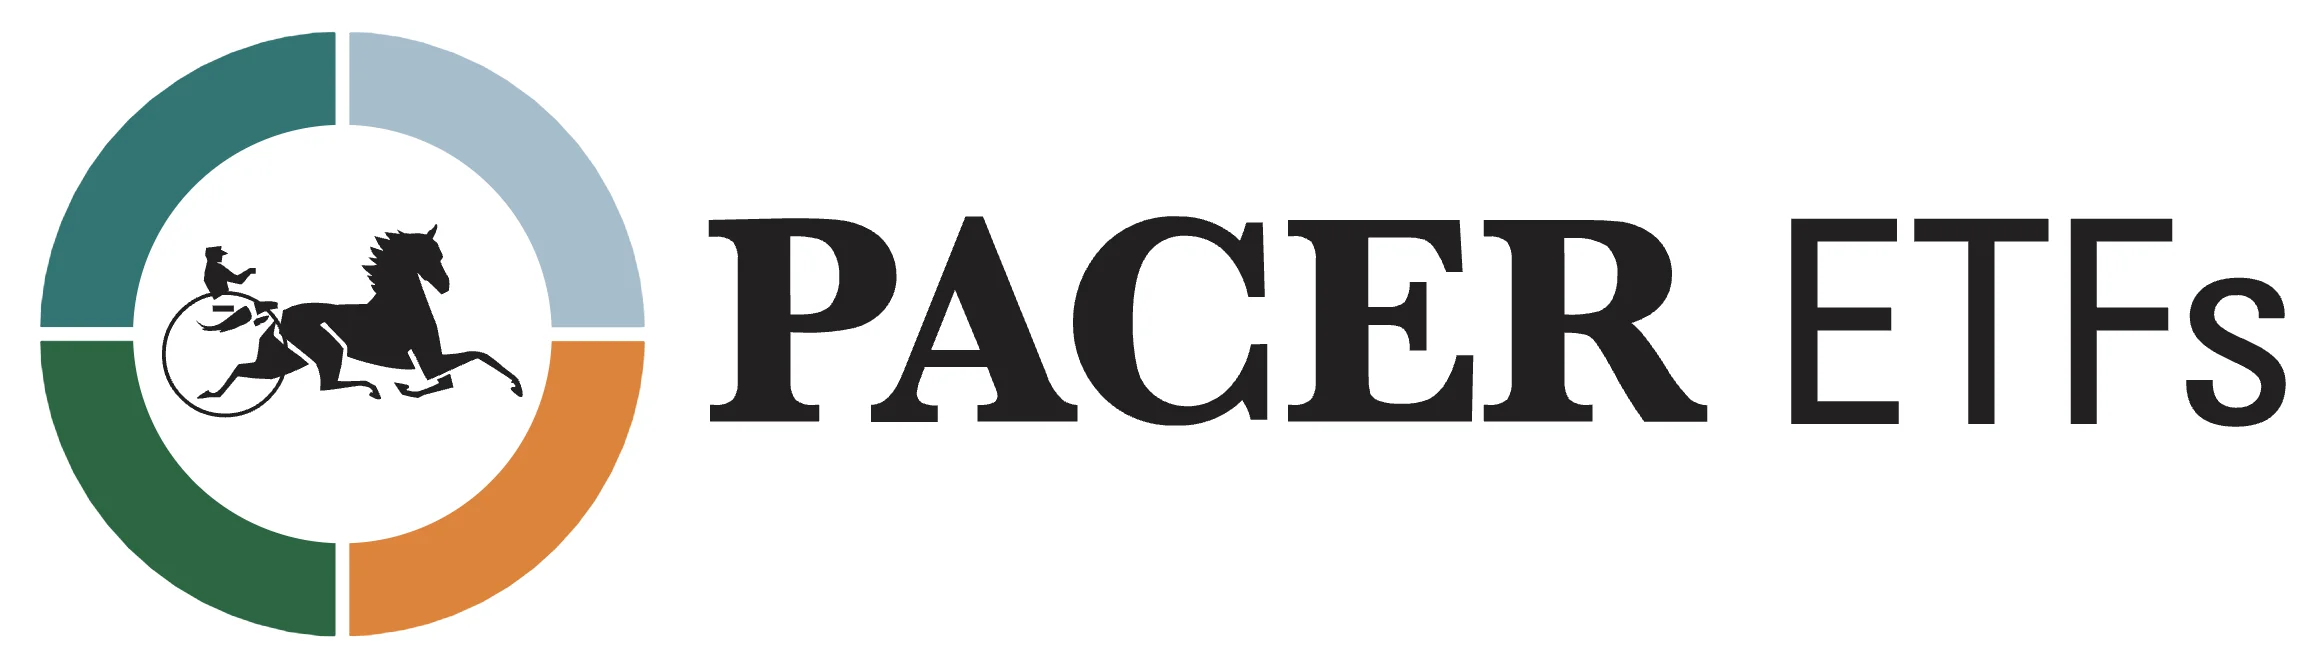 Pacer ETFs: Strategy Driven ETFs logo